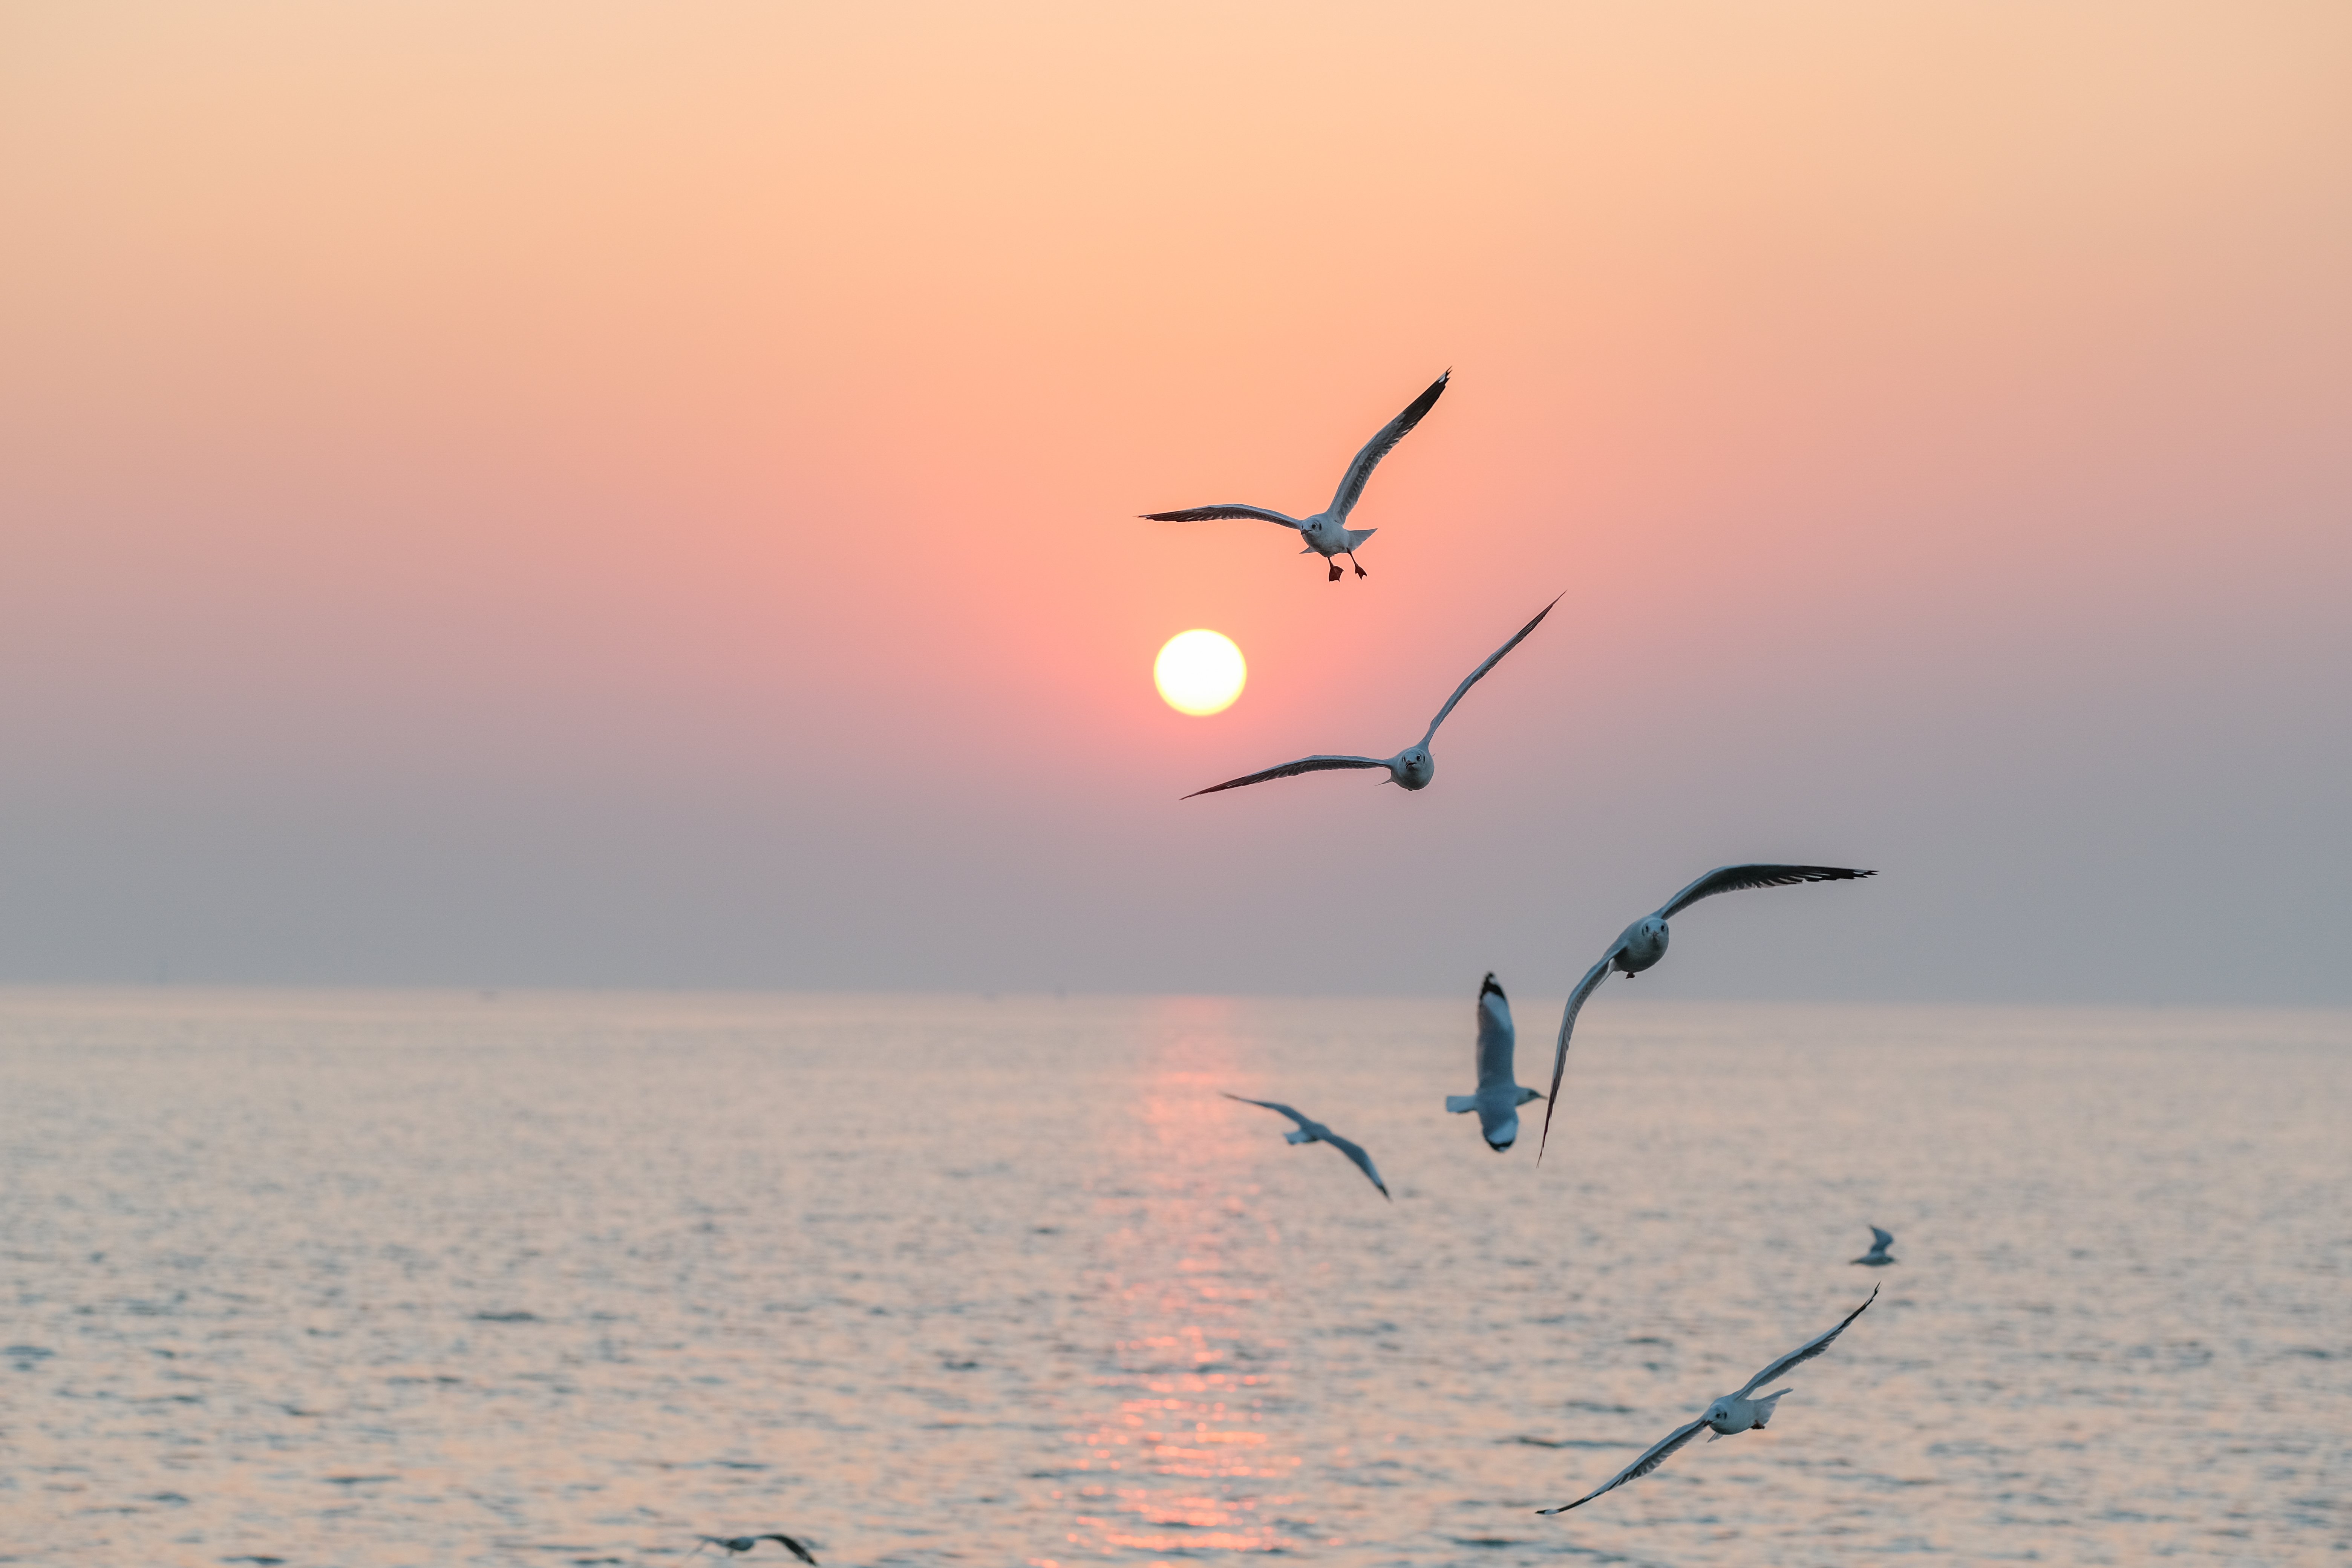 Bandada de gaviotas en vuelo mientras se pone el sol. | Foto: Shutterstock